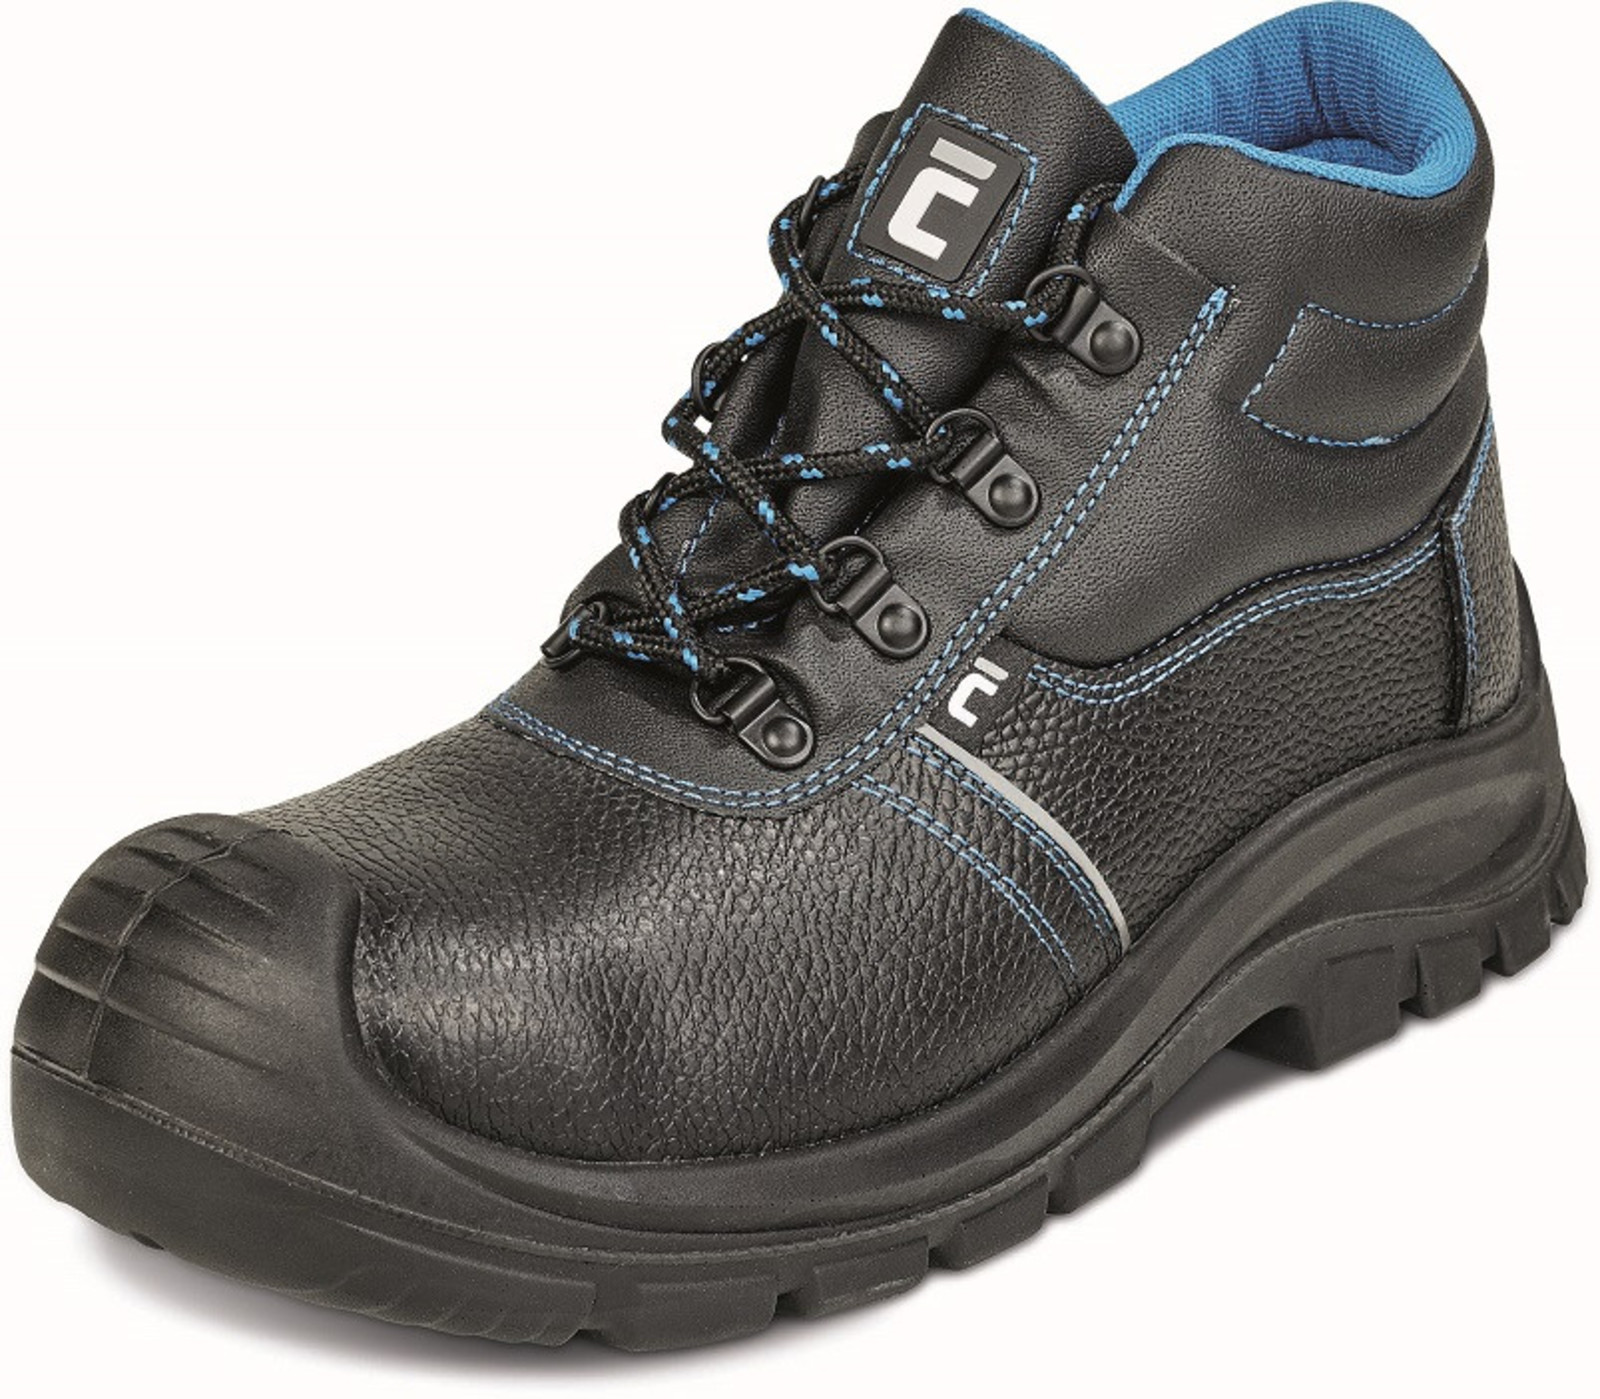 Bezpečnostná obuv Raven XT S3 - veľkosť: 43, farba: čierna